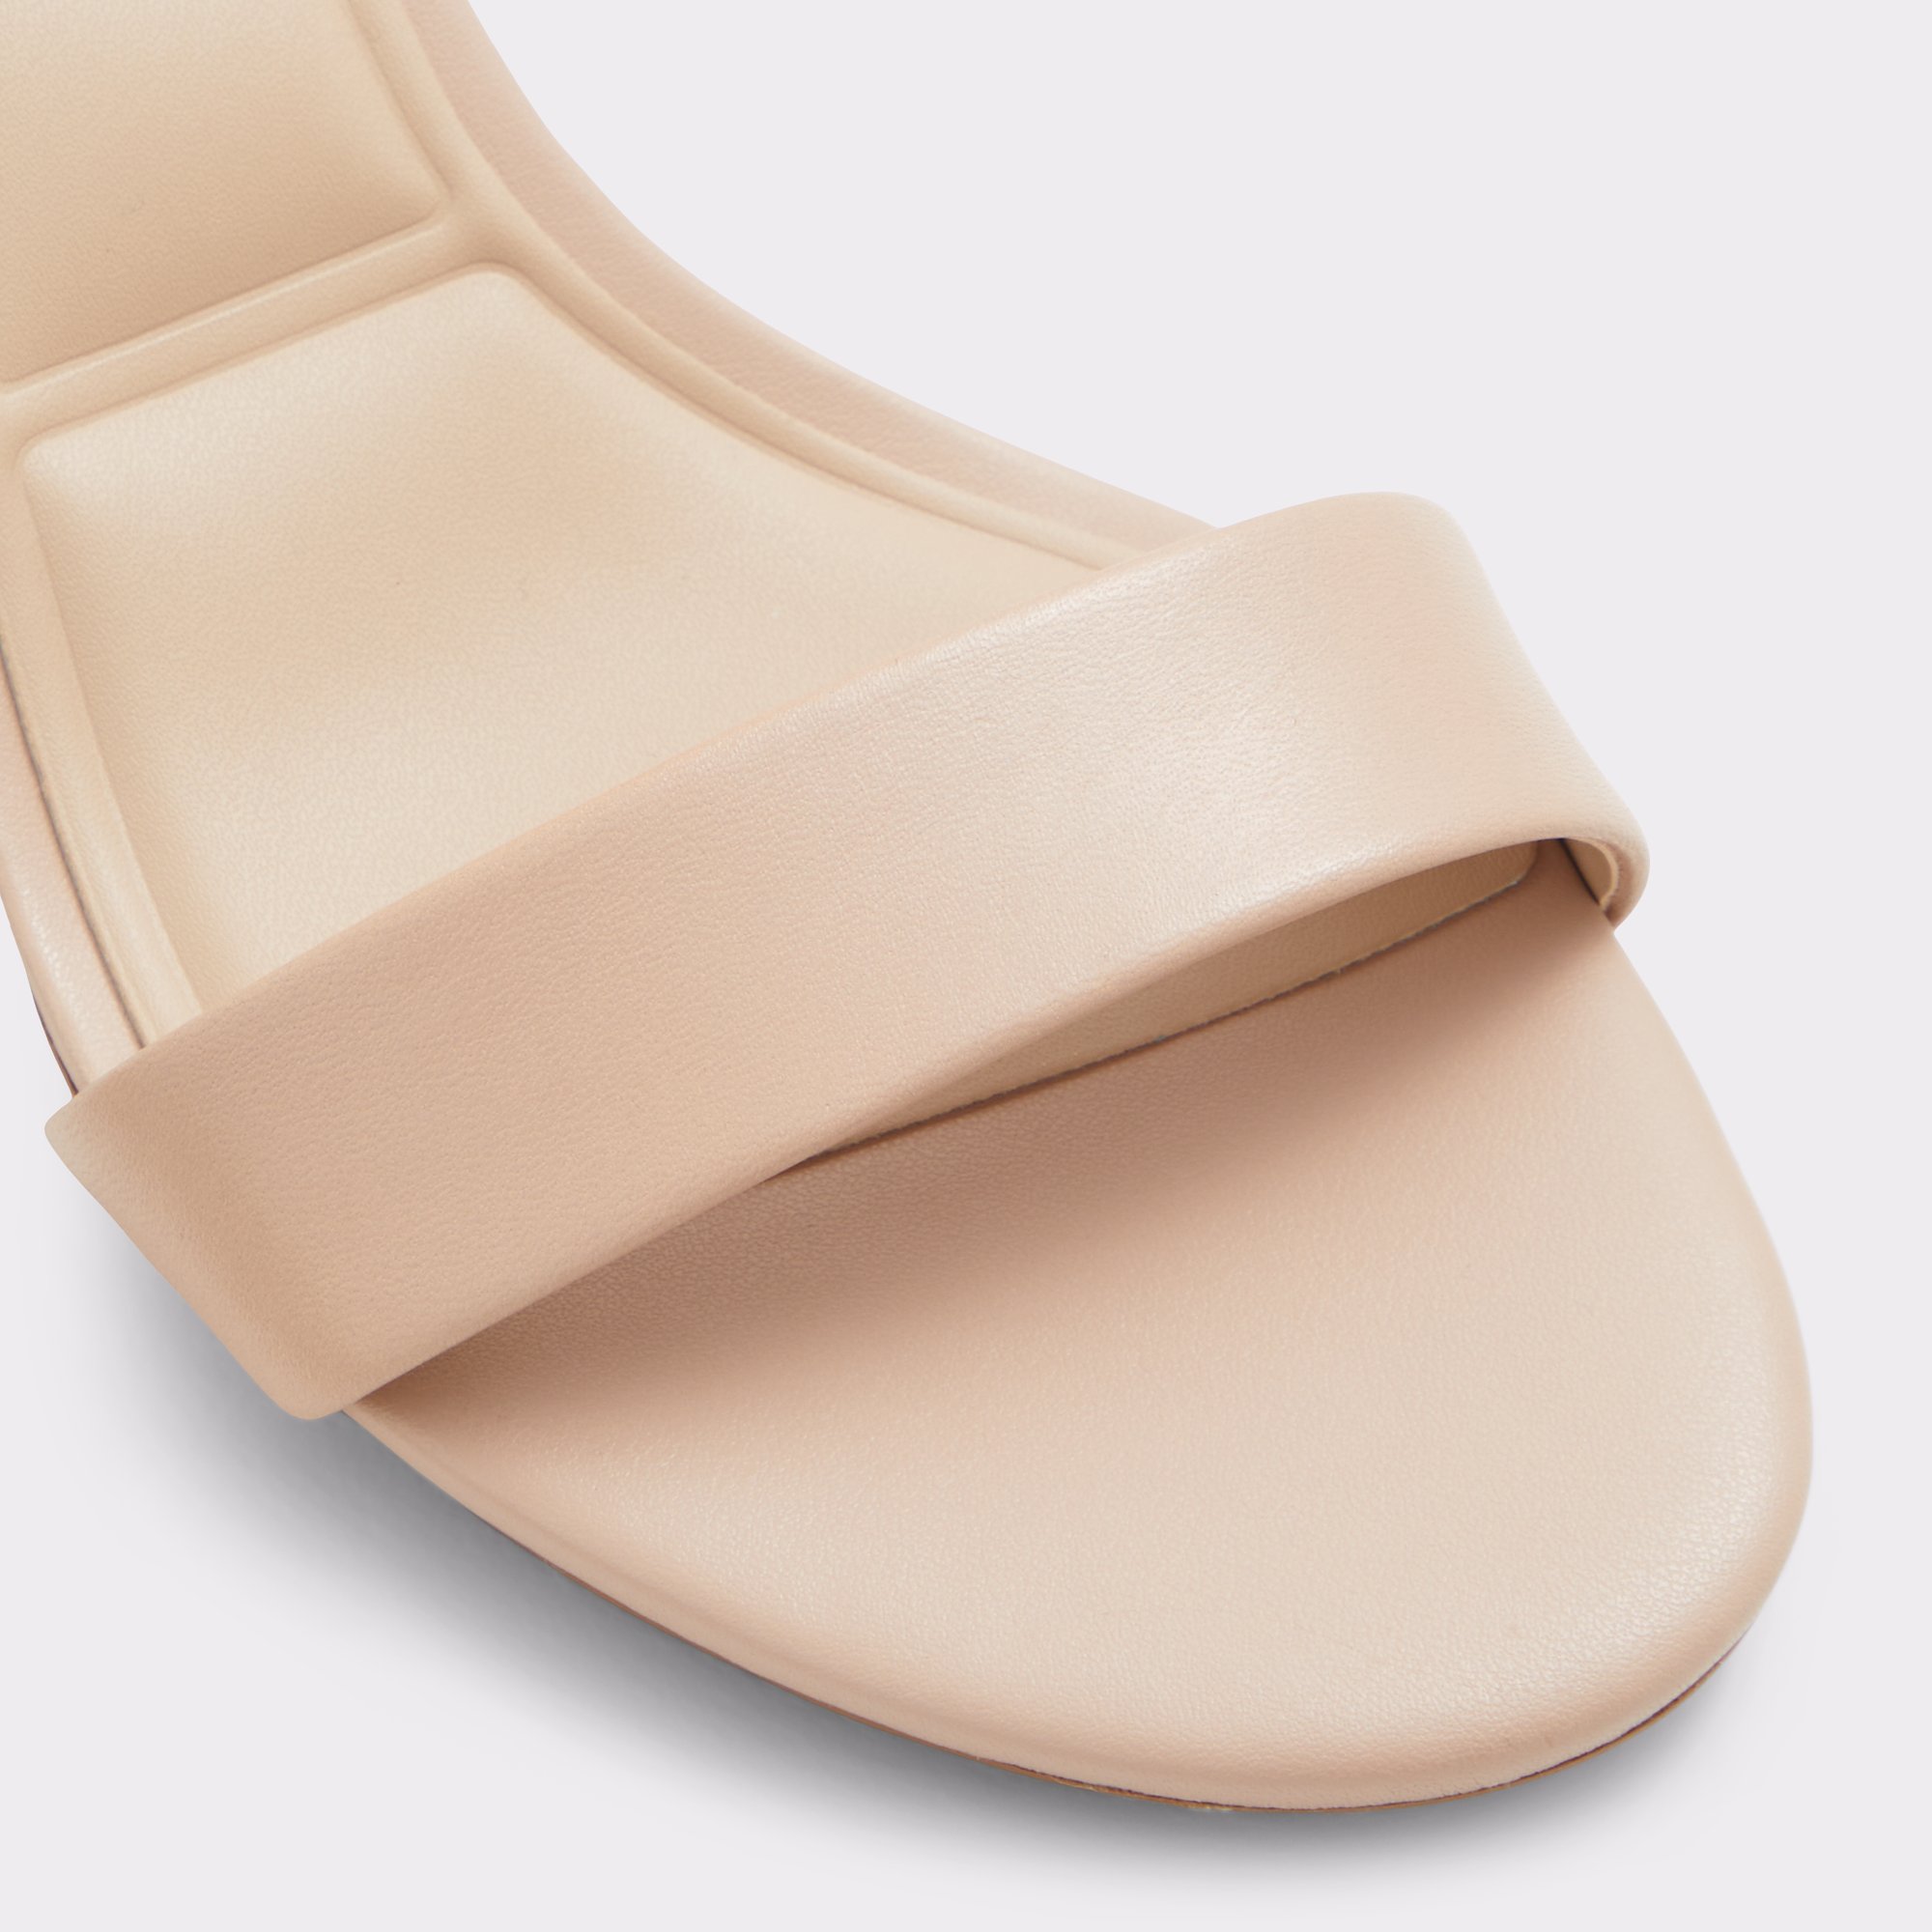 Pristine Bone Leather Smooth Women's Strappy sandals | ALDO Canada